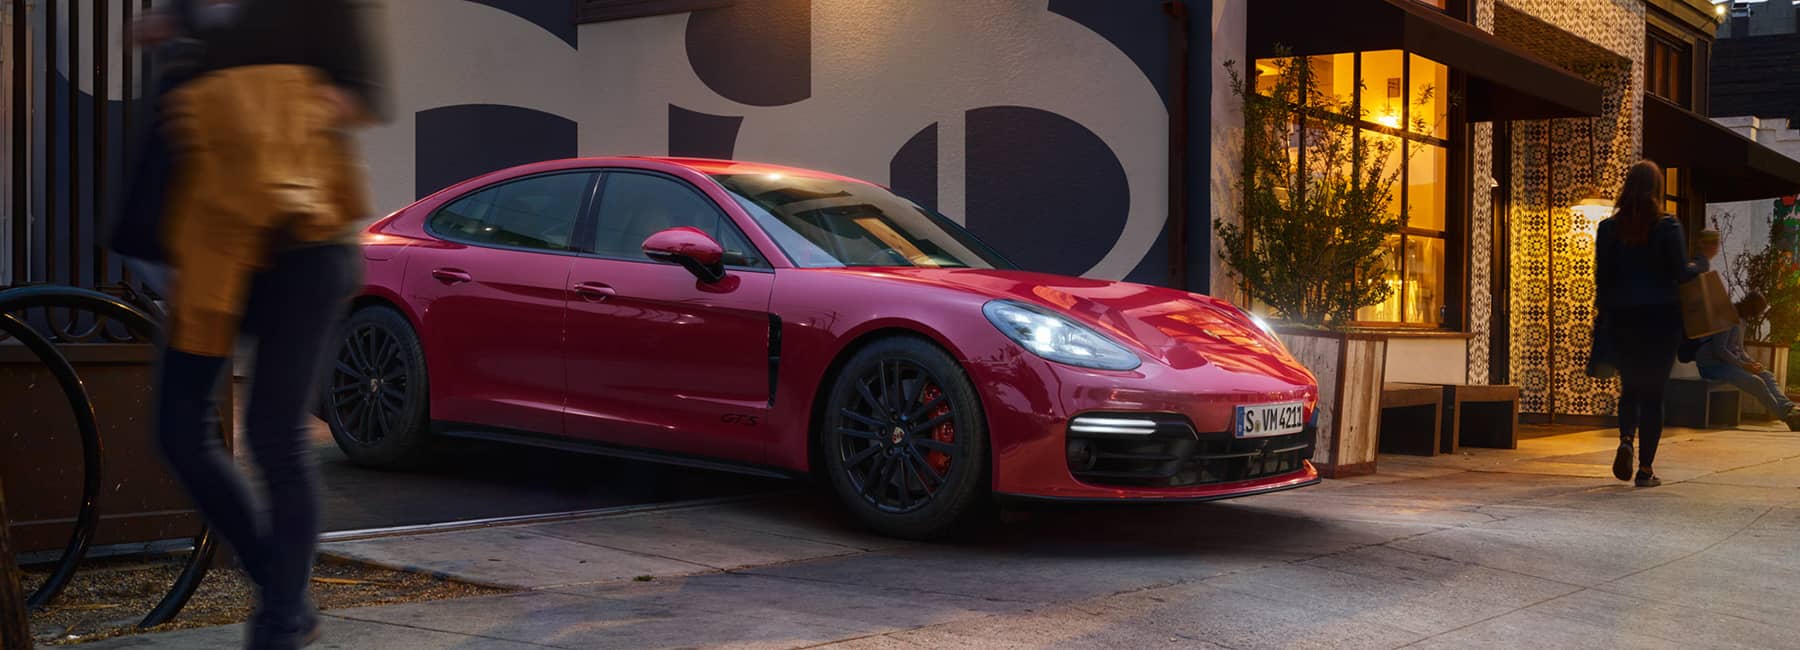 A red Porsche parked outside a quaint store.